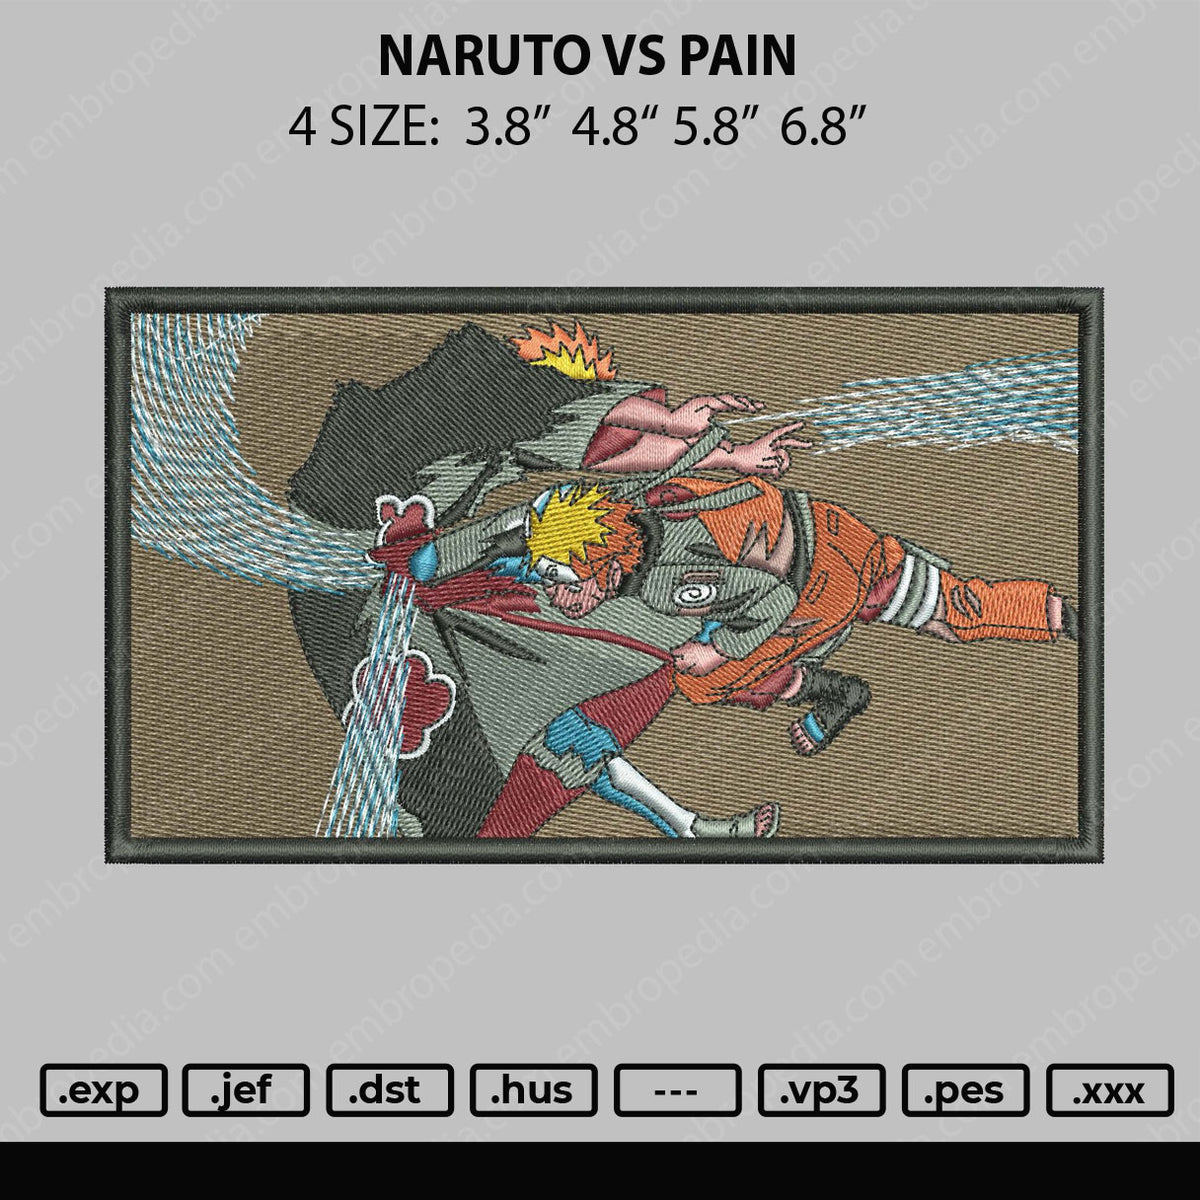 naruto kills pain